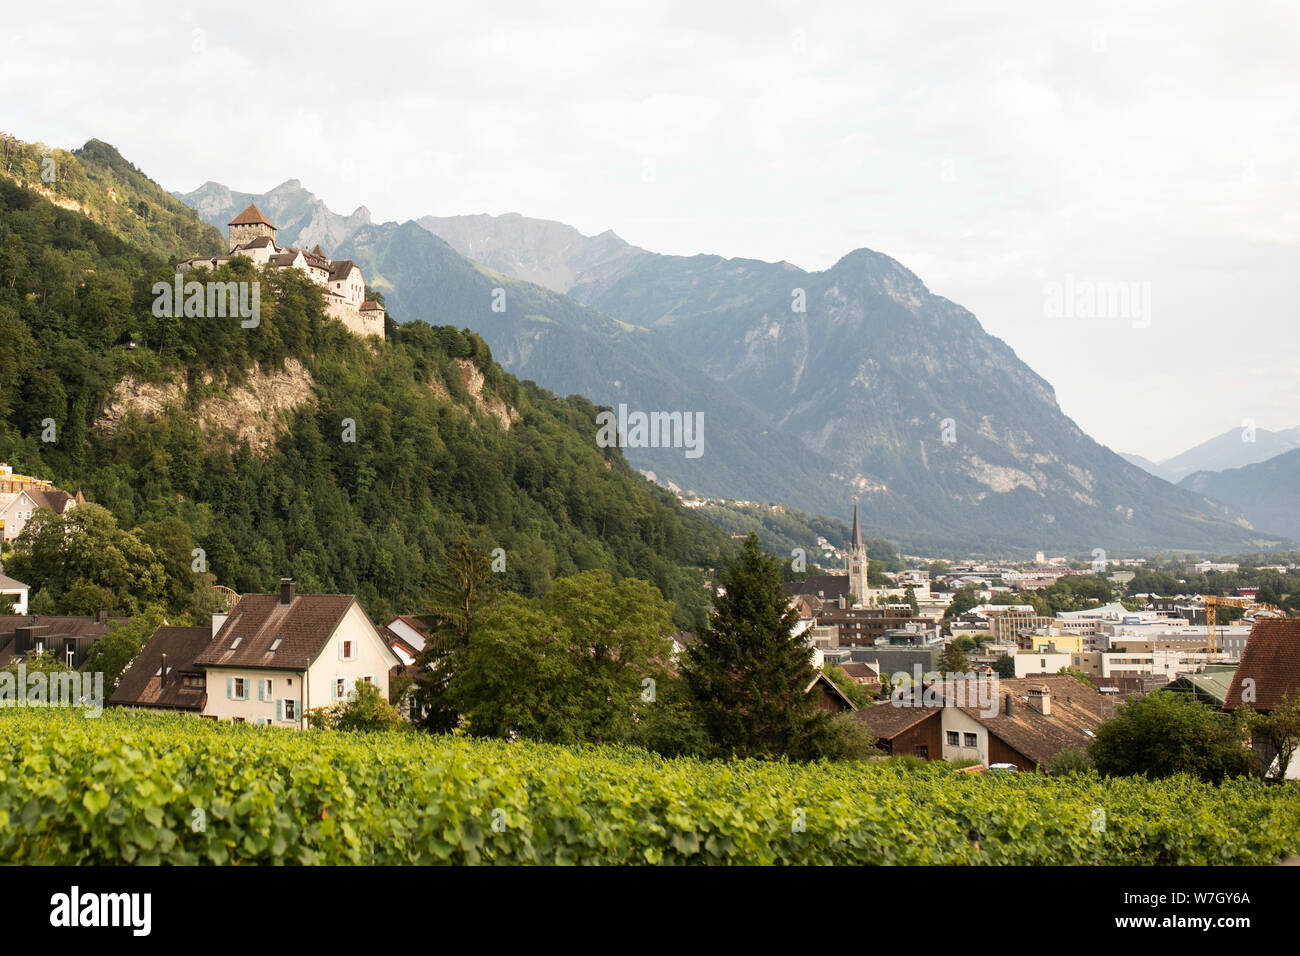 La città di Vaduz, Liechtenstein, nelle alpi tra Svizzera e Austria, come osservata dal royal vigneti. Il castello è in alto a sinistra. Foto Stock